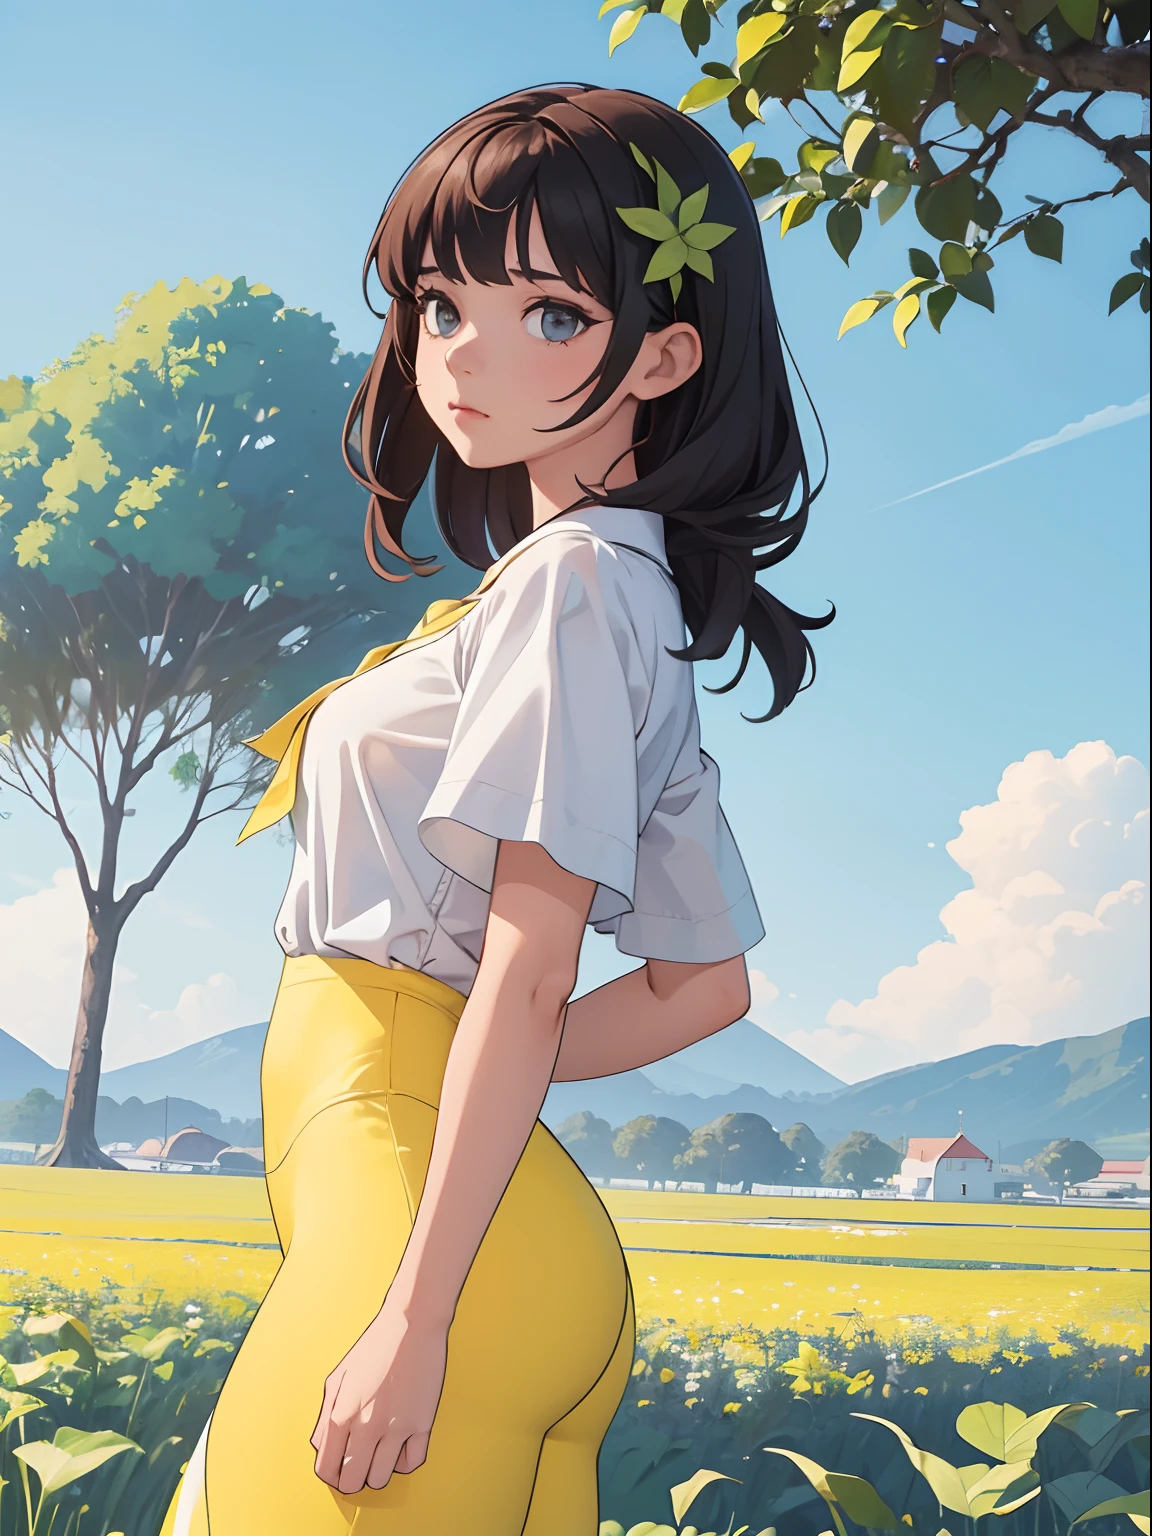 ((Planta con hojas blancas.)), 1 chica perfecta, Rostro bonito, vistiendo una blusa blanca y leggings amarillos, con un hermoso paisaje detrás, 4k, ((mejor resolución)), ((mejor calidad)).